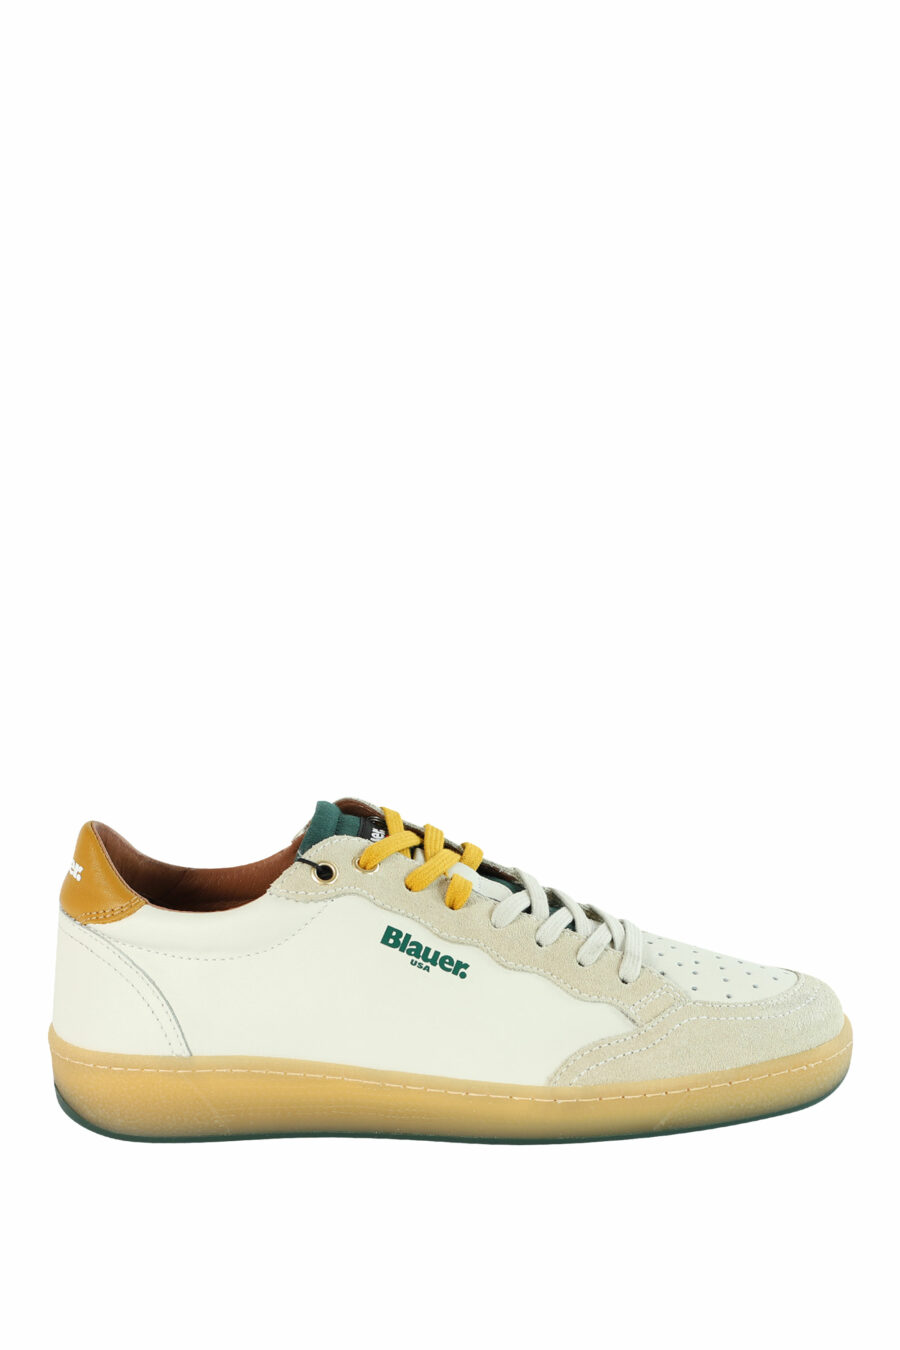 Zapatillas "MURRAY" blancas con detalles verdes y amarillos - 8058156497566